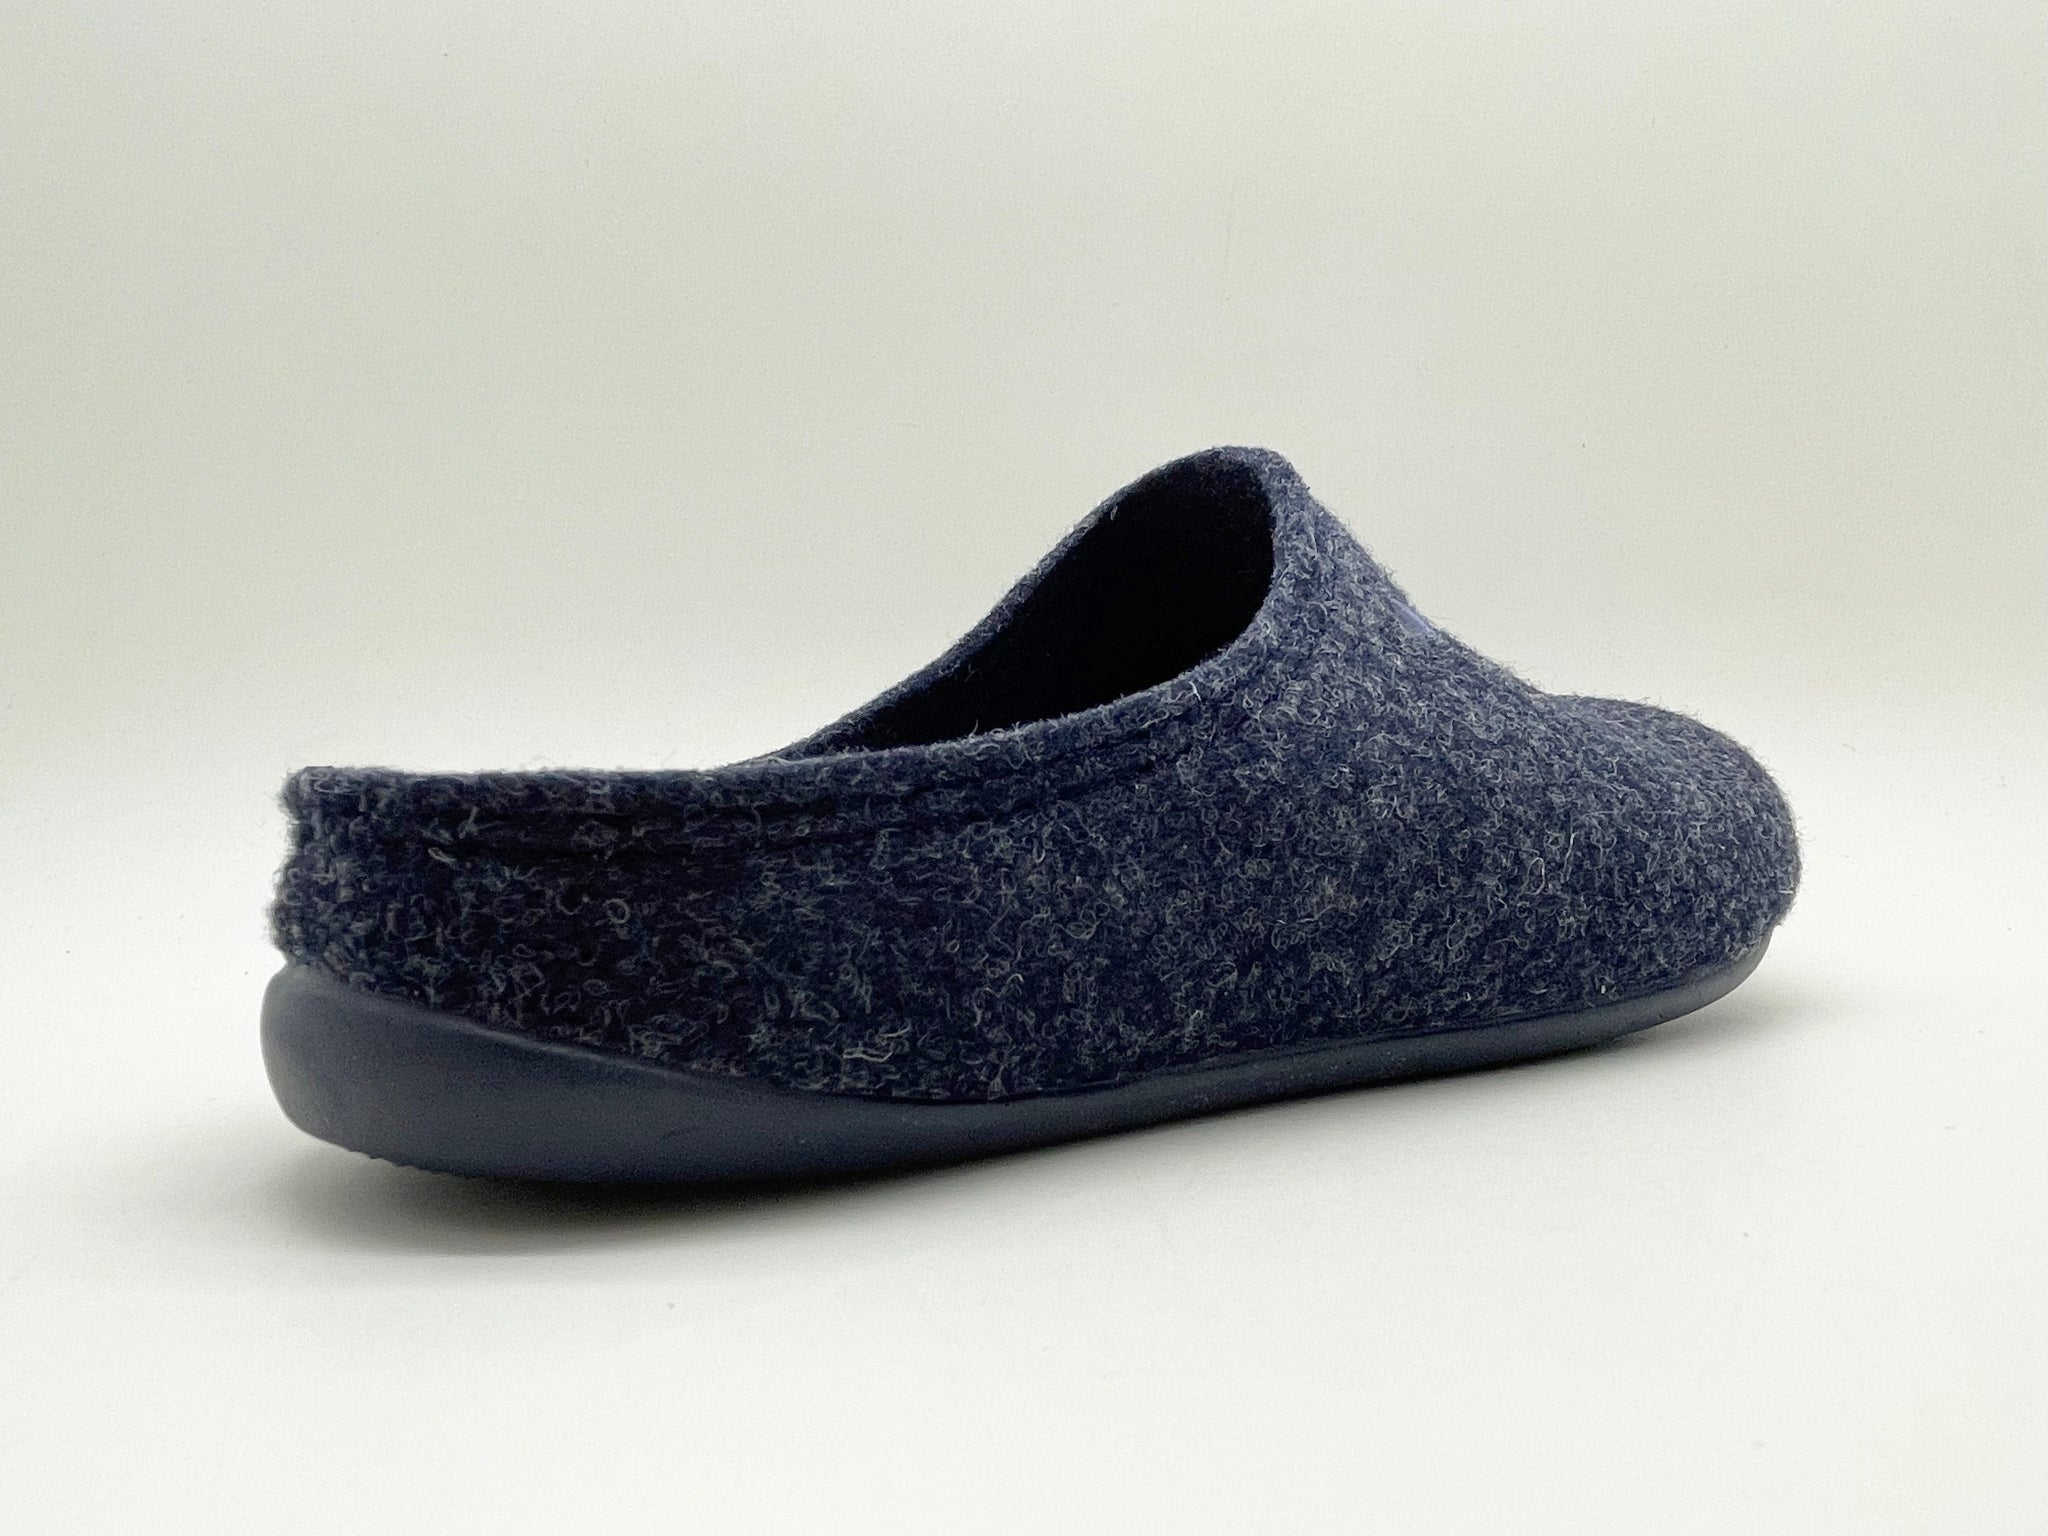 NAT 2 calzado thies 1856 ® PET reciclado Zapatilla vegano azul marino oscuro (W/M/X) moda sostenible moda ética